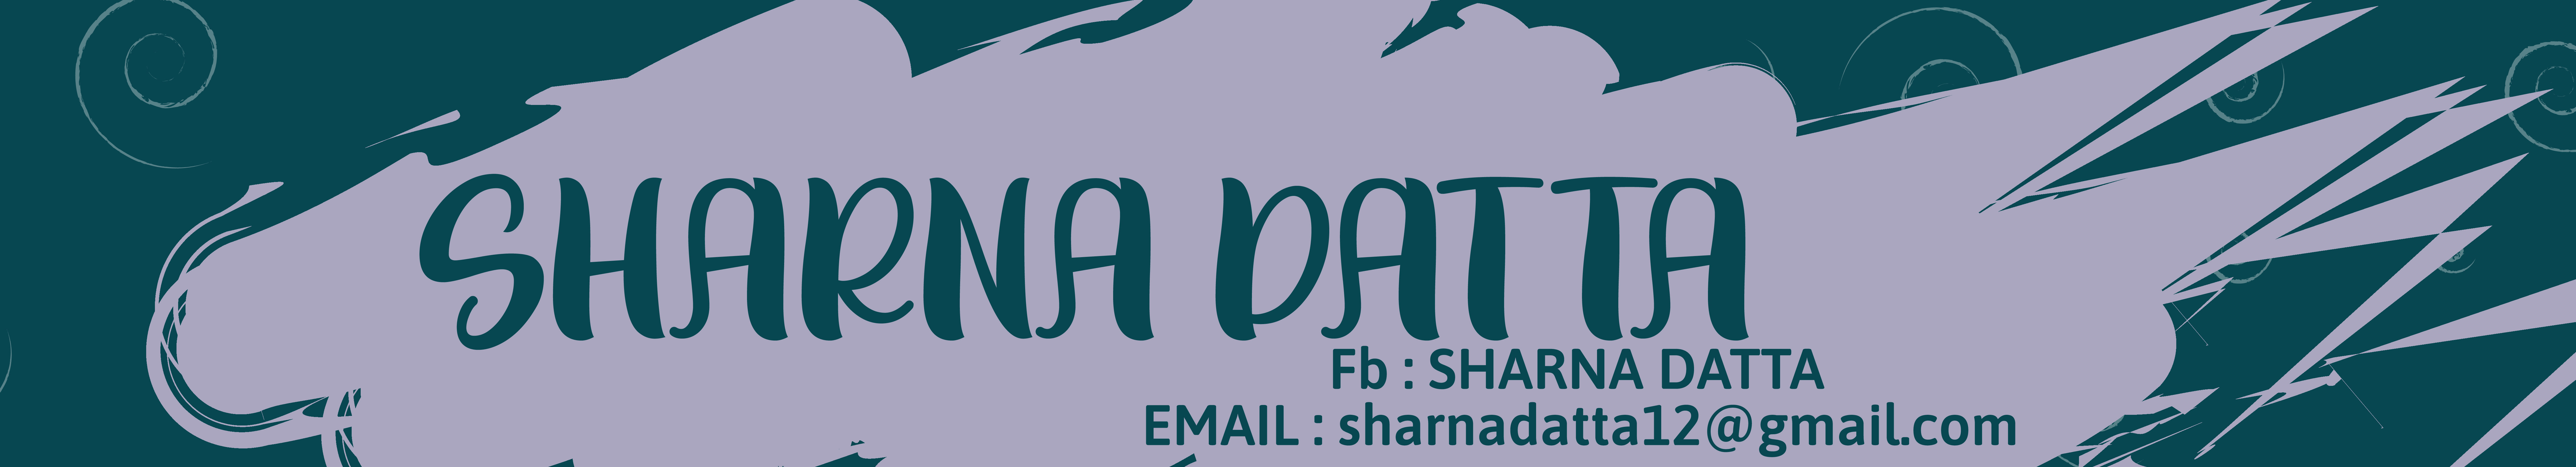 Sharna Dattas profilbanner